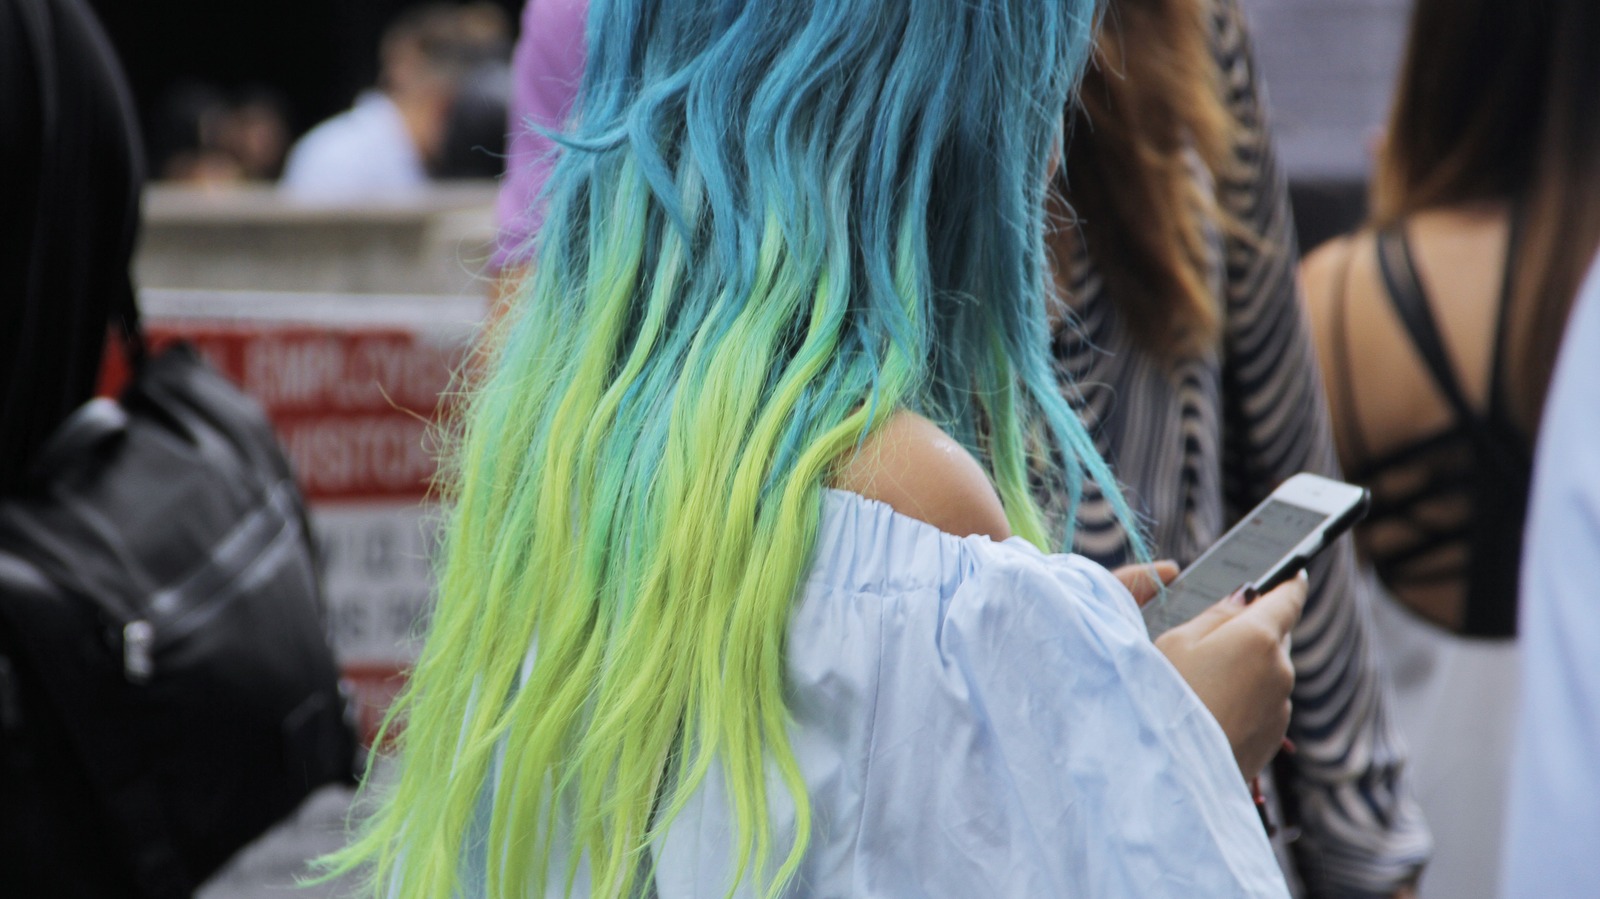 Blue Dip Dye Hair Tutorial on Pinterest - wide 11